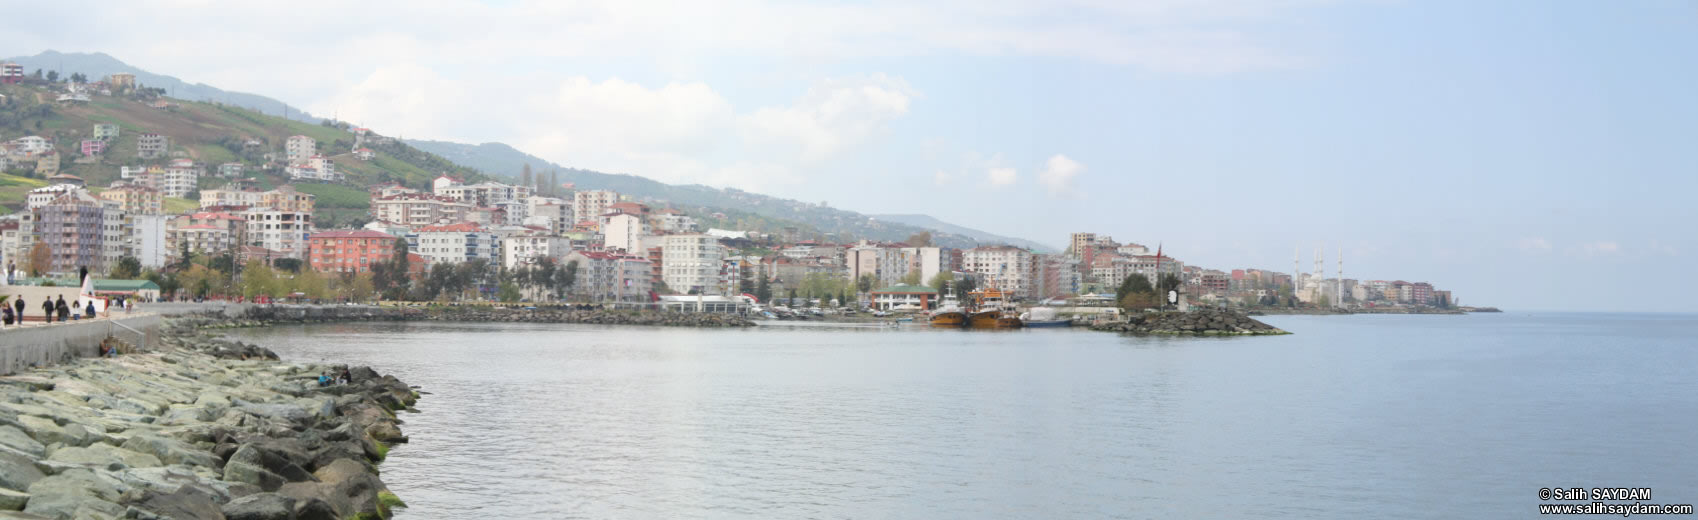 Akaabat Panoramas 1 (Trabzon)